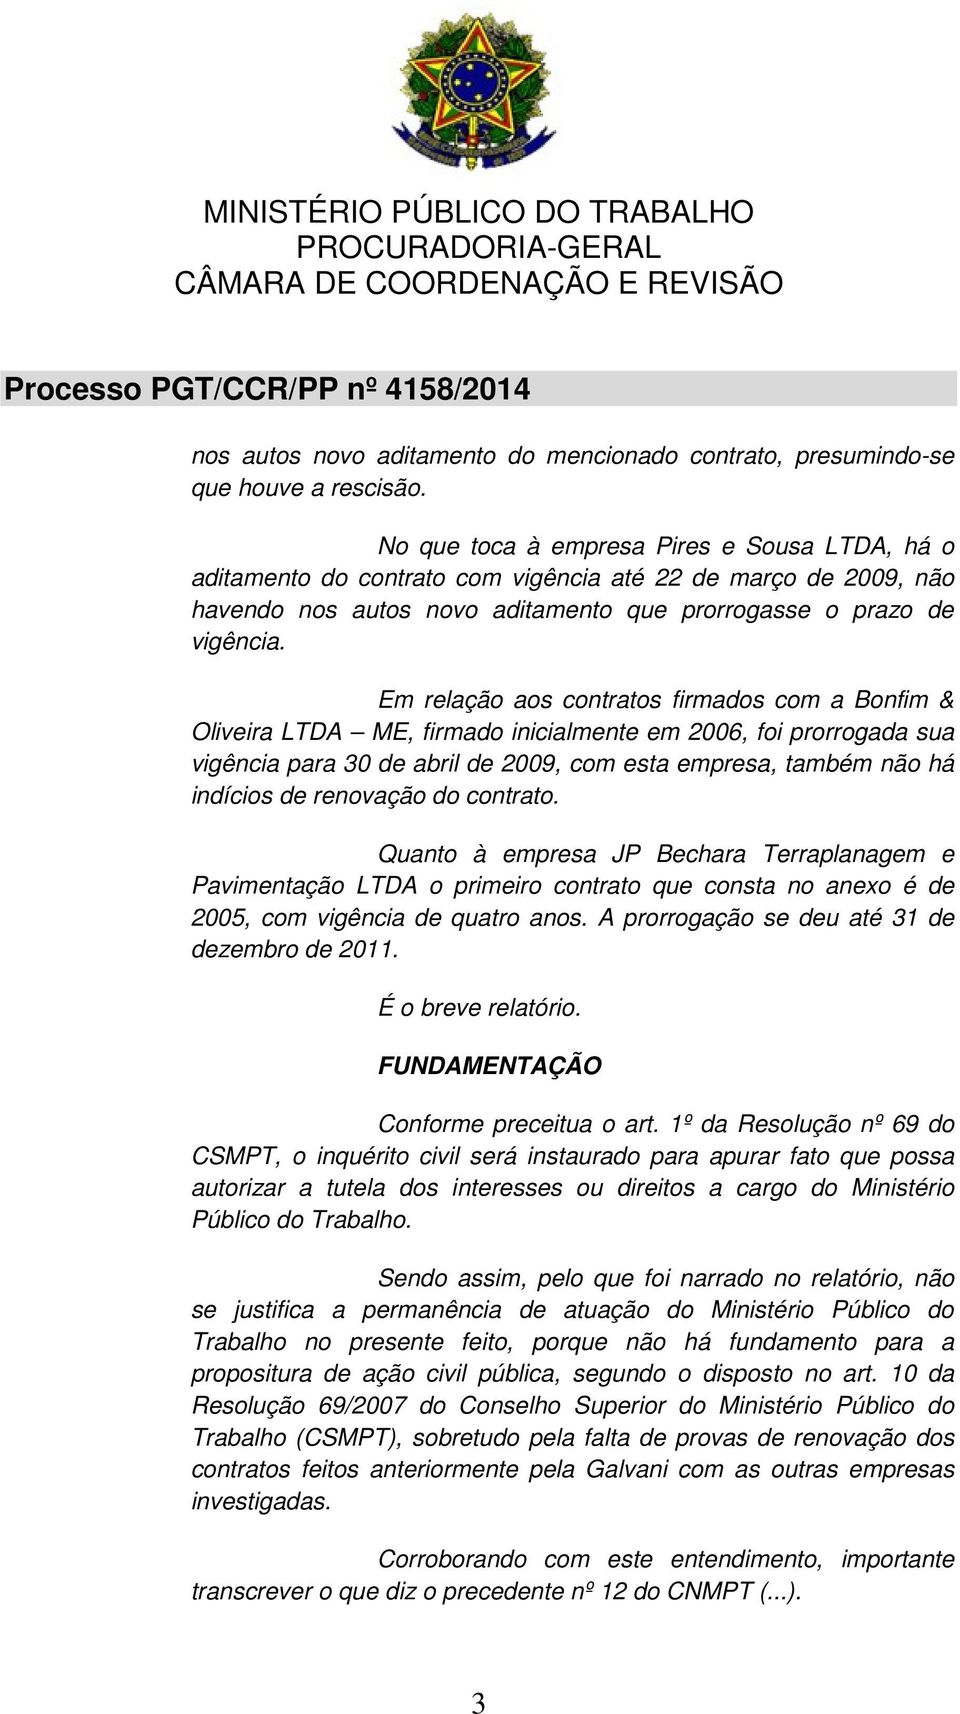 Em relação aos contratos firmados com a Bonfim & Oliveira LTDA ME, firmado inicialmente em 2006, foi prorrogada sua vigência para 30 de abril de 2009, com esta empresa, também não há indícios de